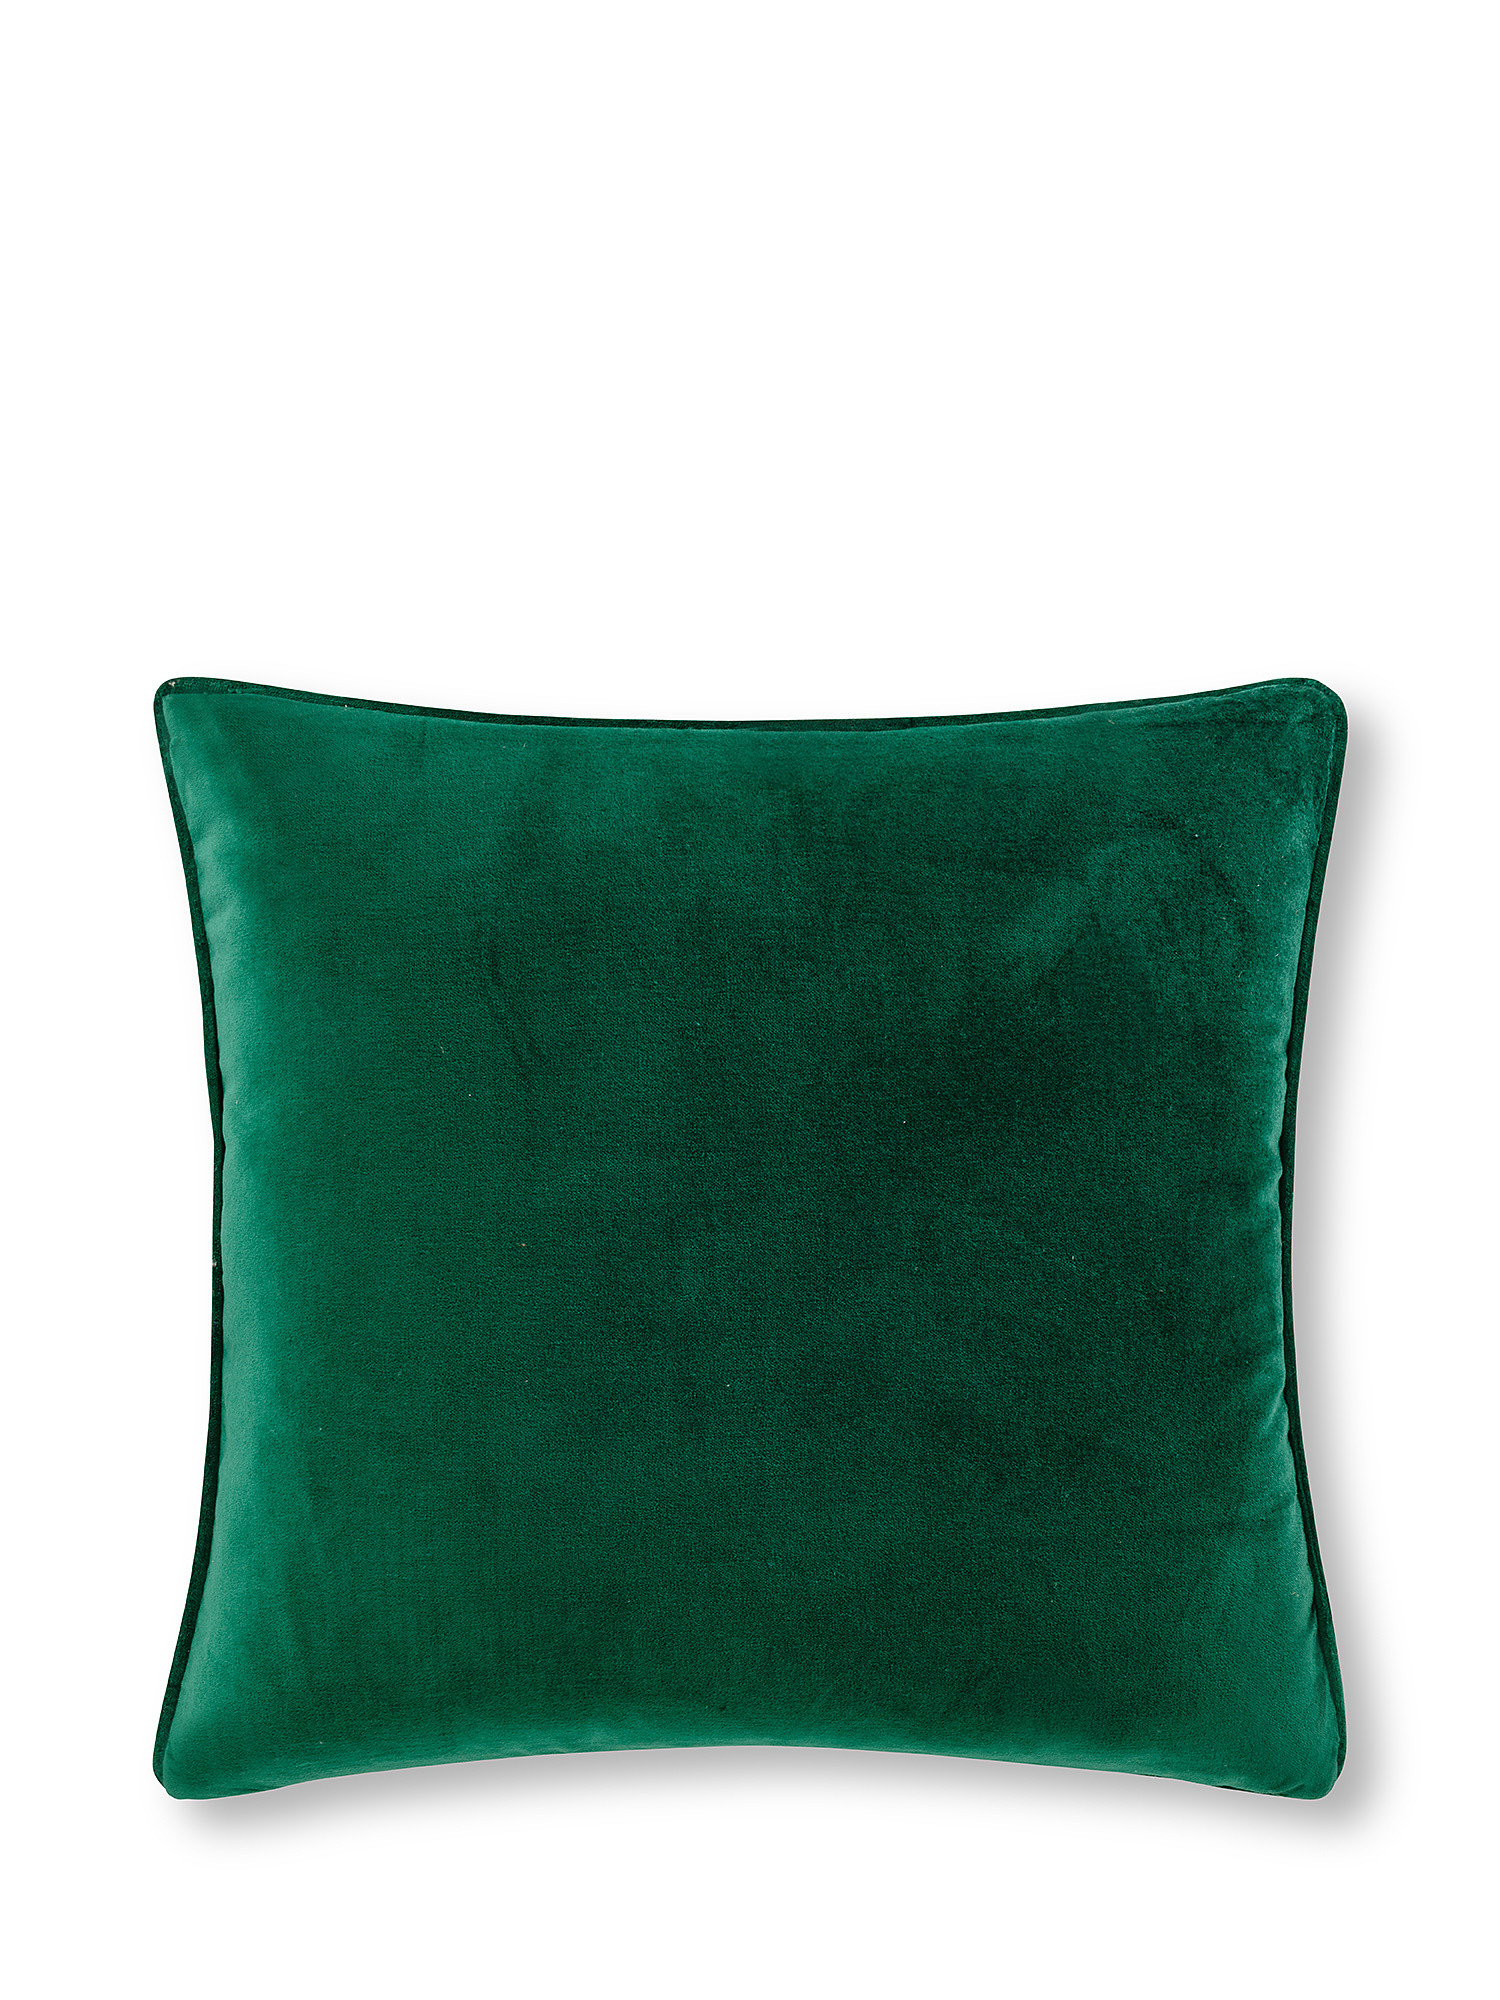 Cuscino velluto tinta unita 45x45cm, Verde, large image number 0